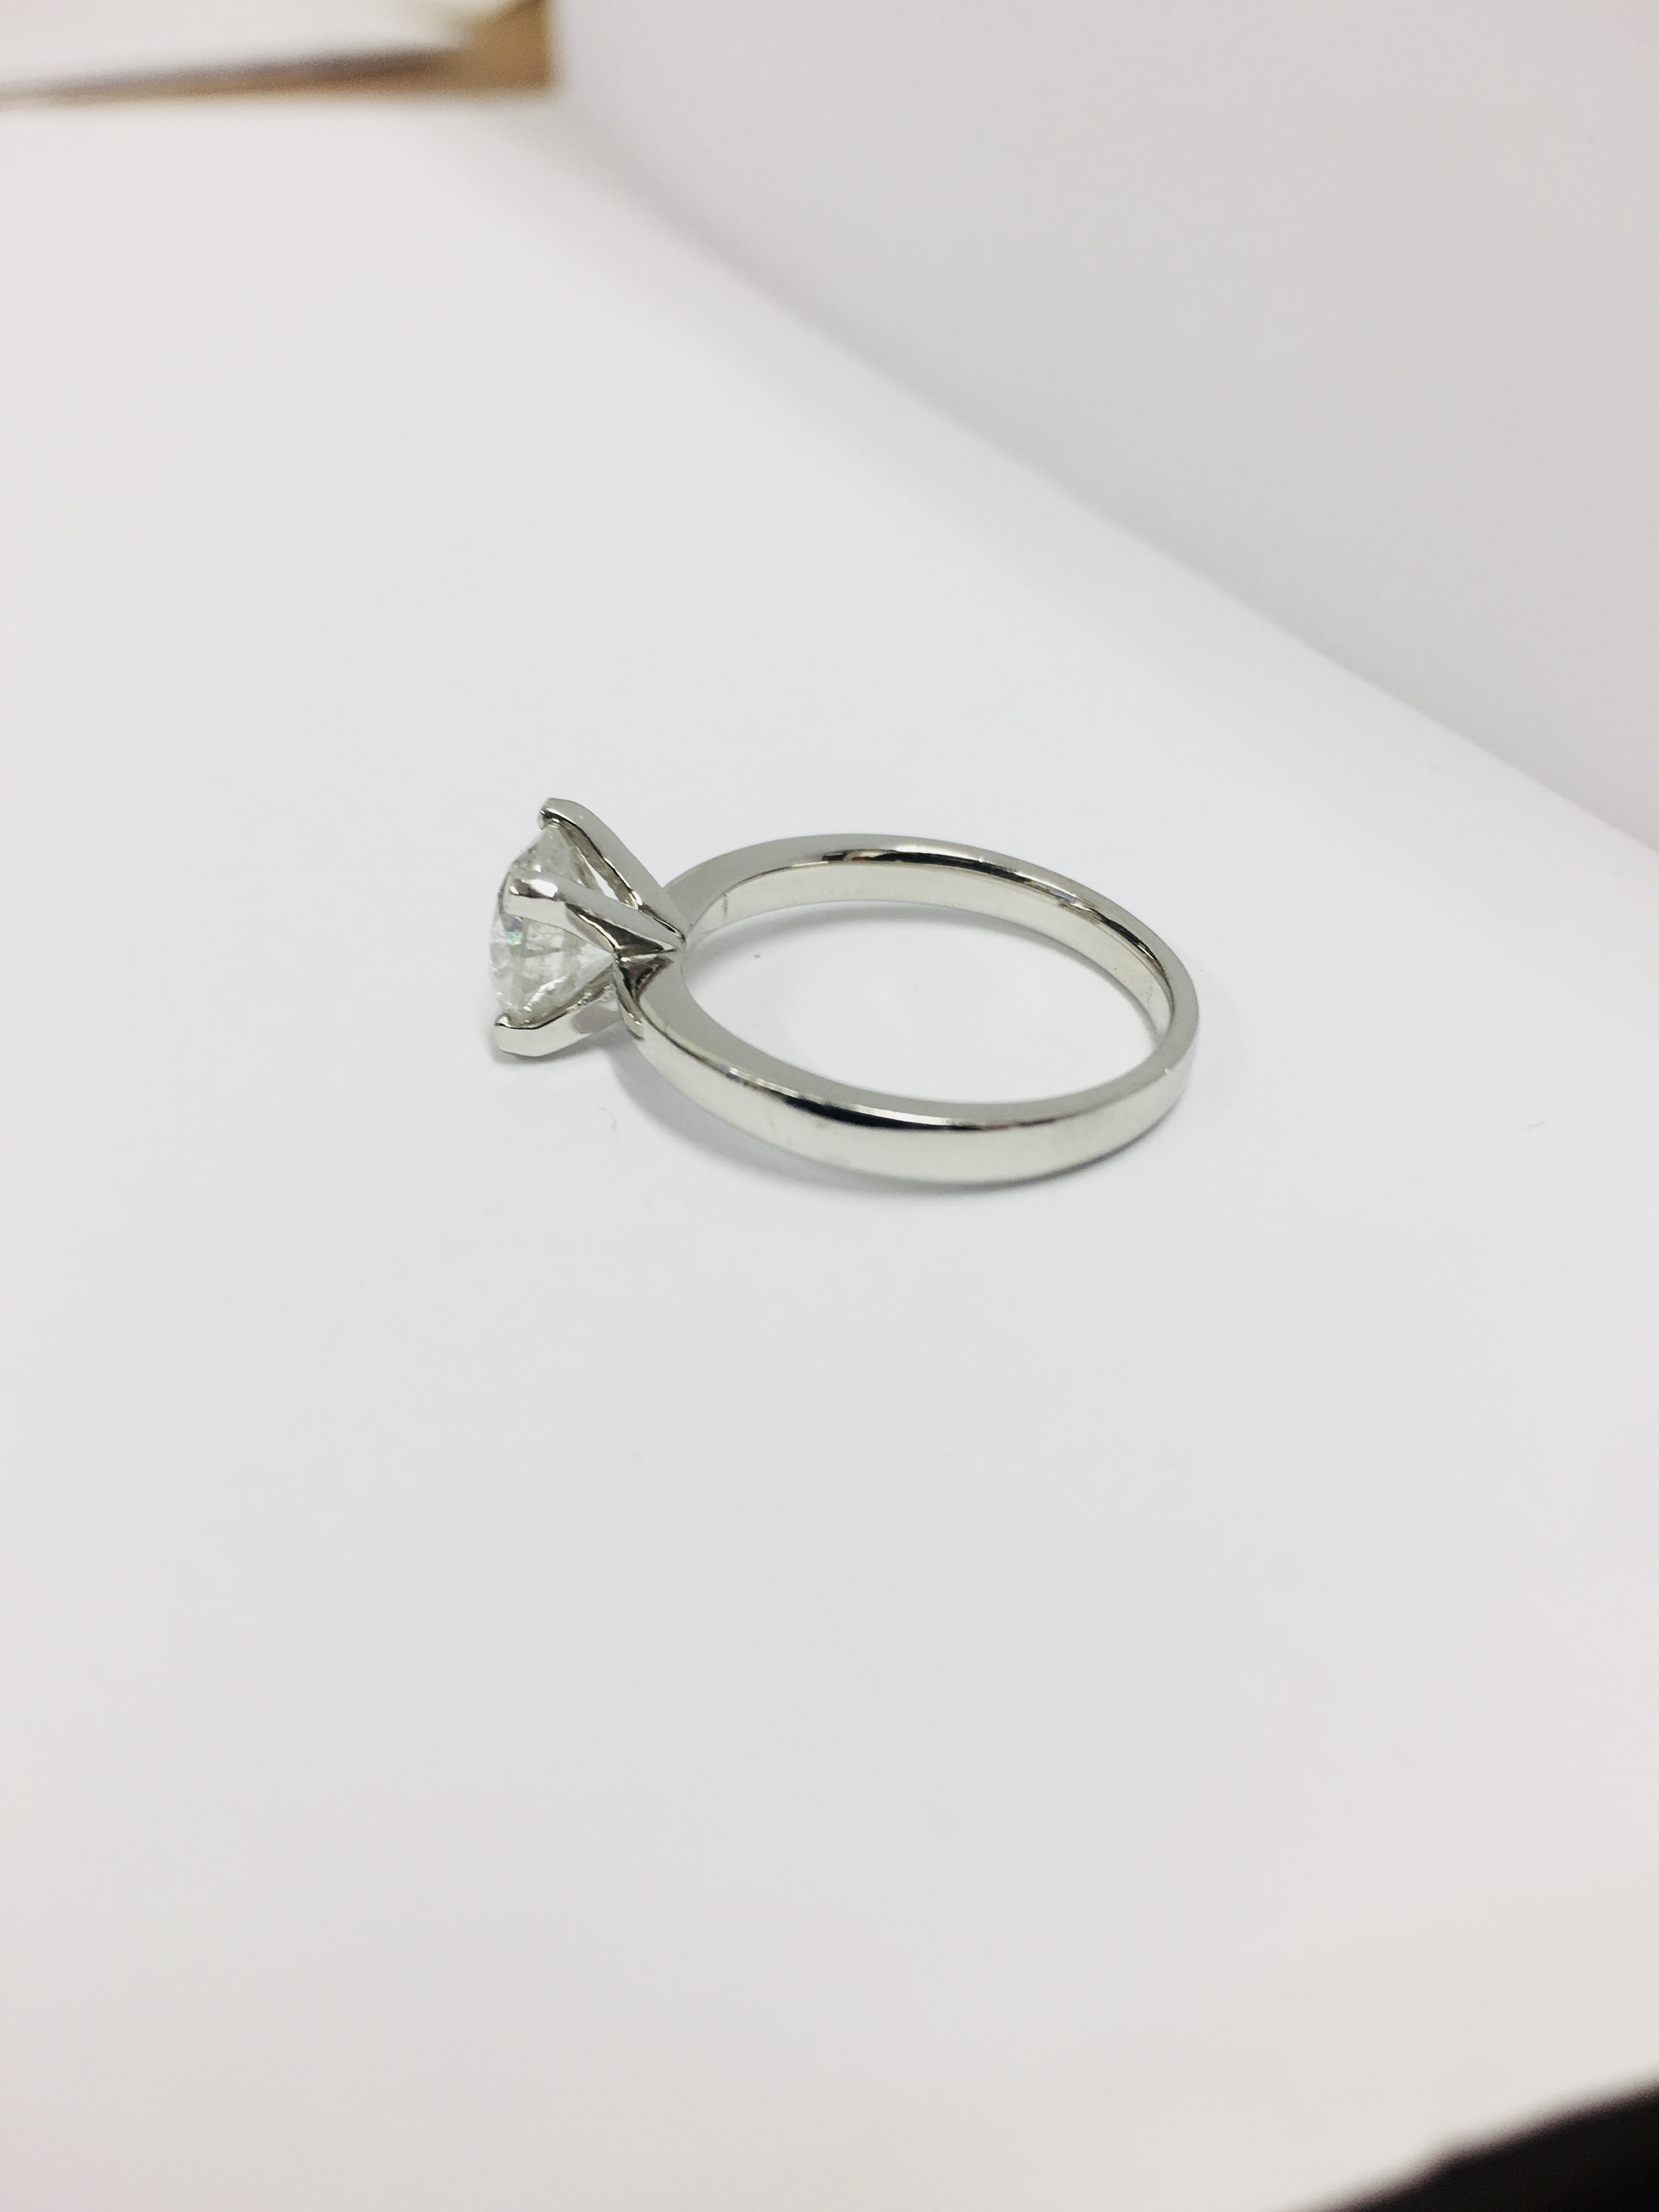 1.50ct diamond solitaire ring set in platinum - Image 14 of 35